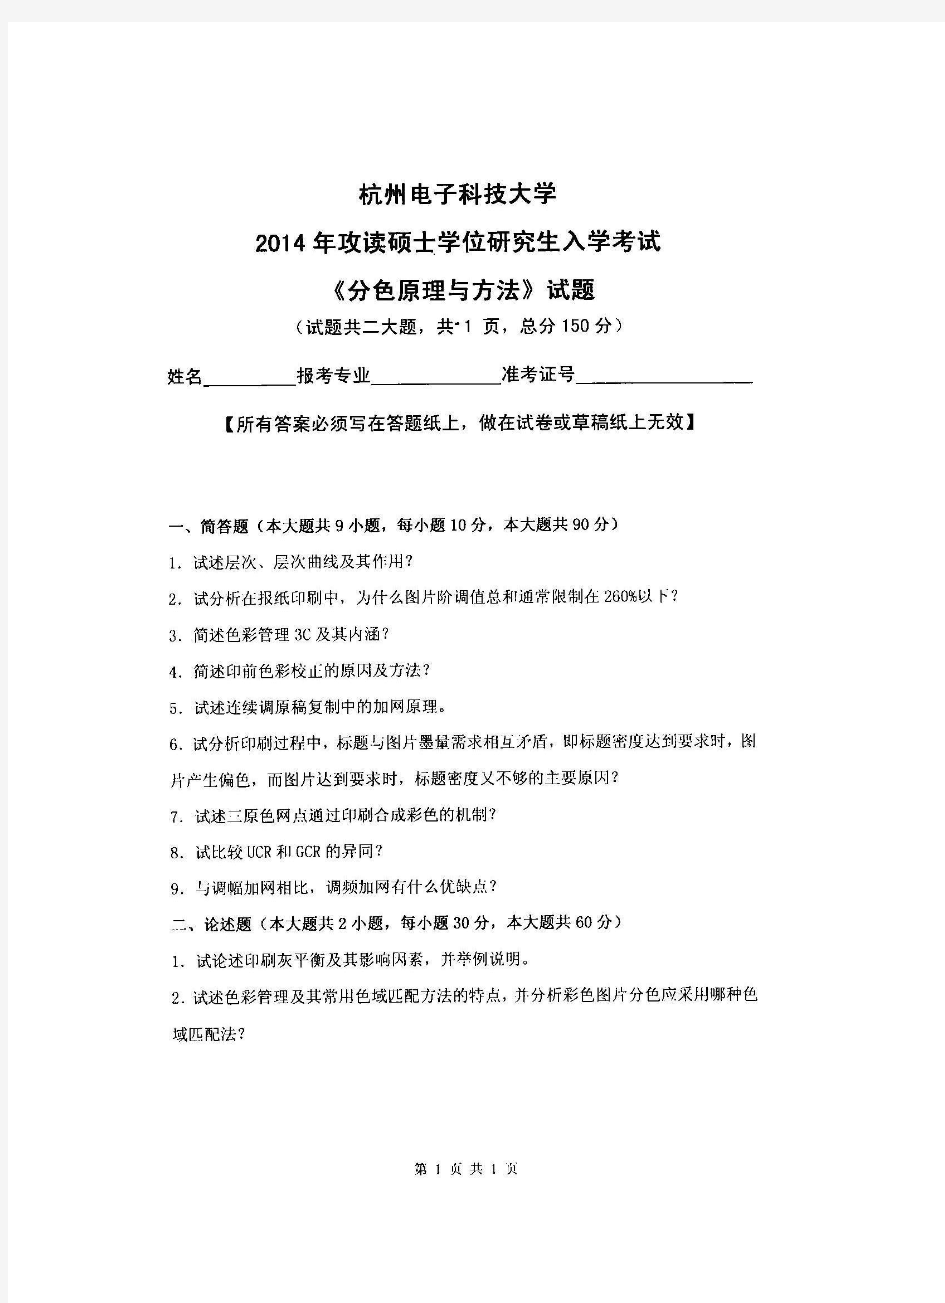 杭州电子科技大学分色原理与方法-2014